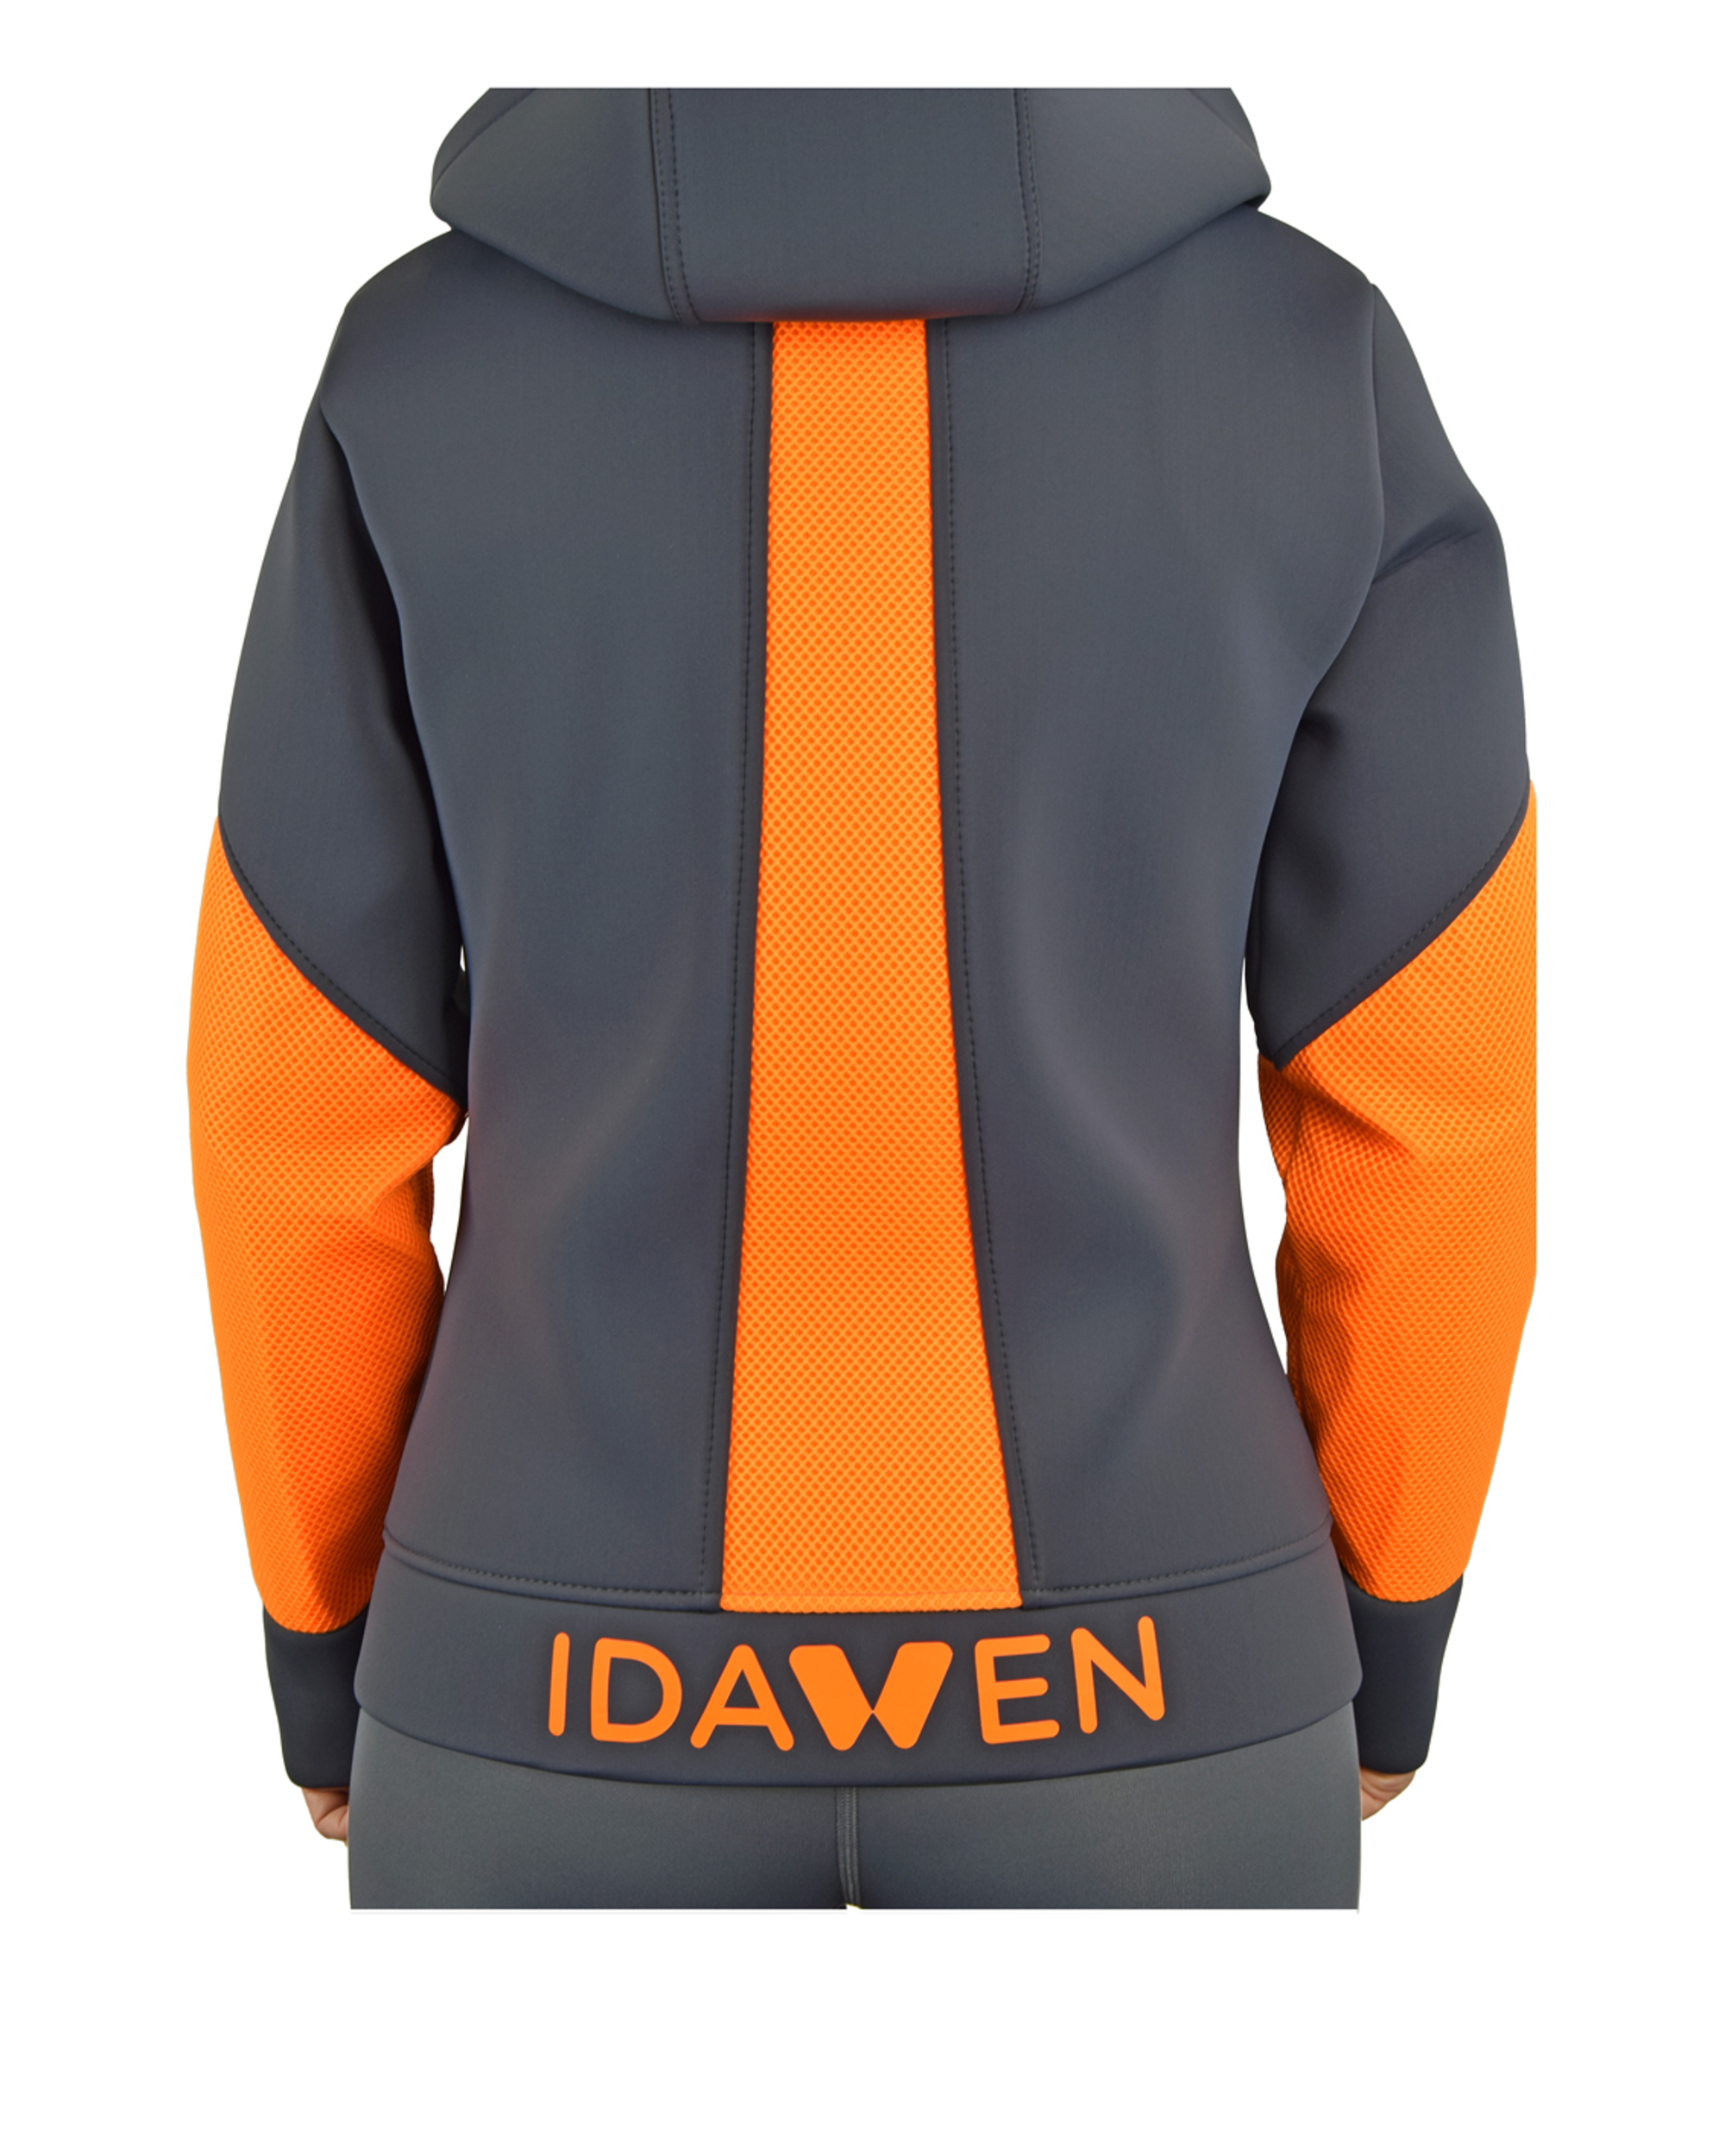 Neoprene jacket model AWEN grey